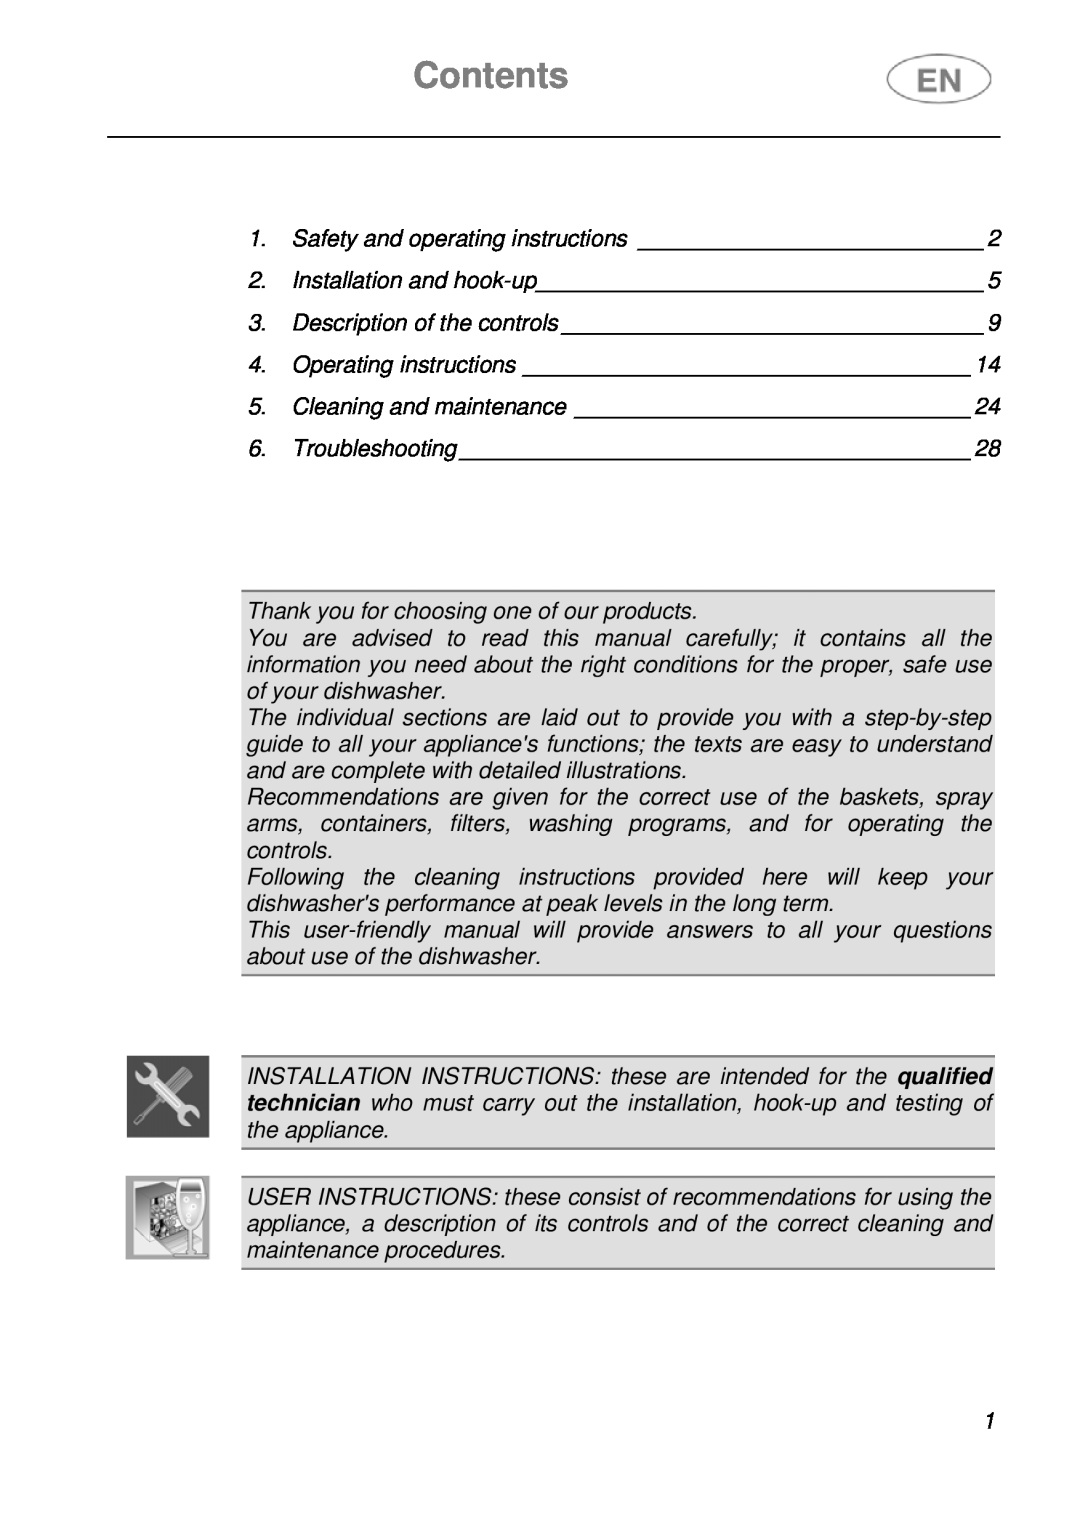 CDA WC460 manual Contents 